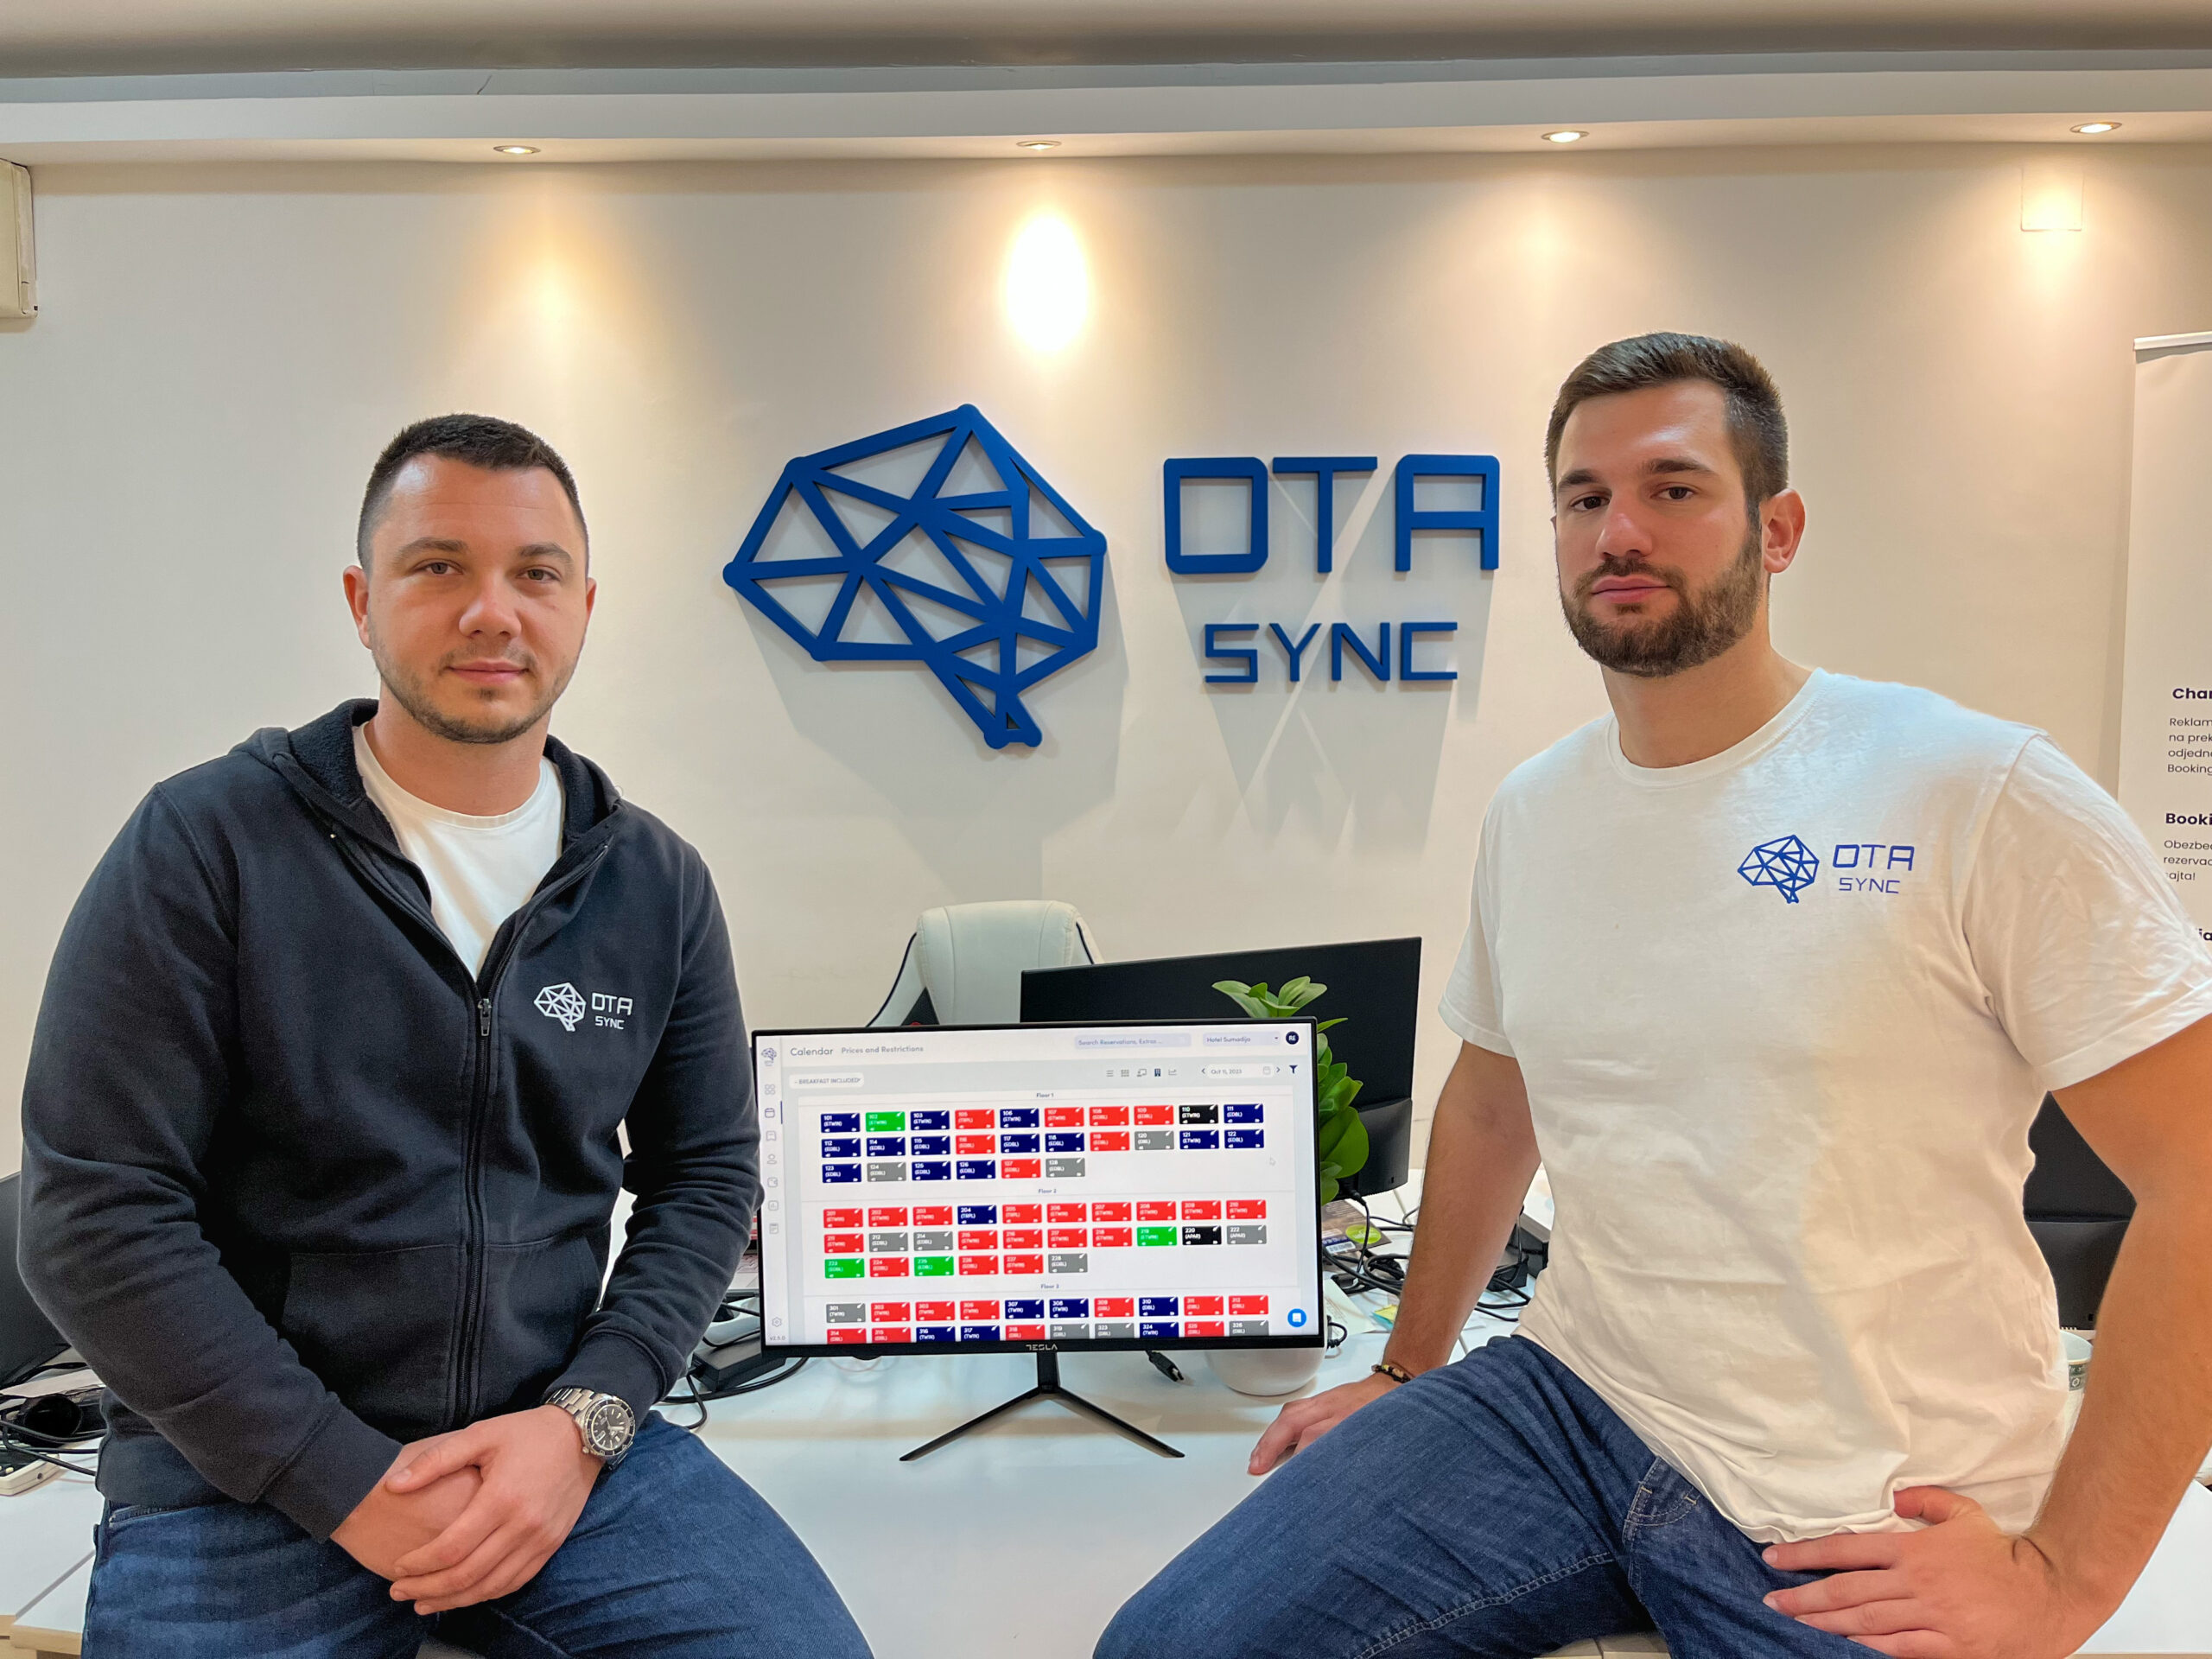 OTA Sync закрывает международный посевной раунд на сумму 1.3 млн евро под руководством Presto Ventures